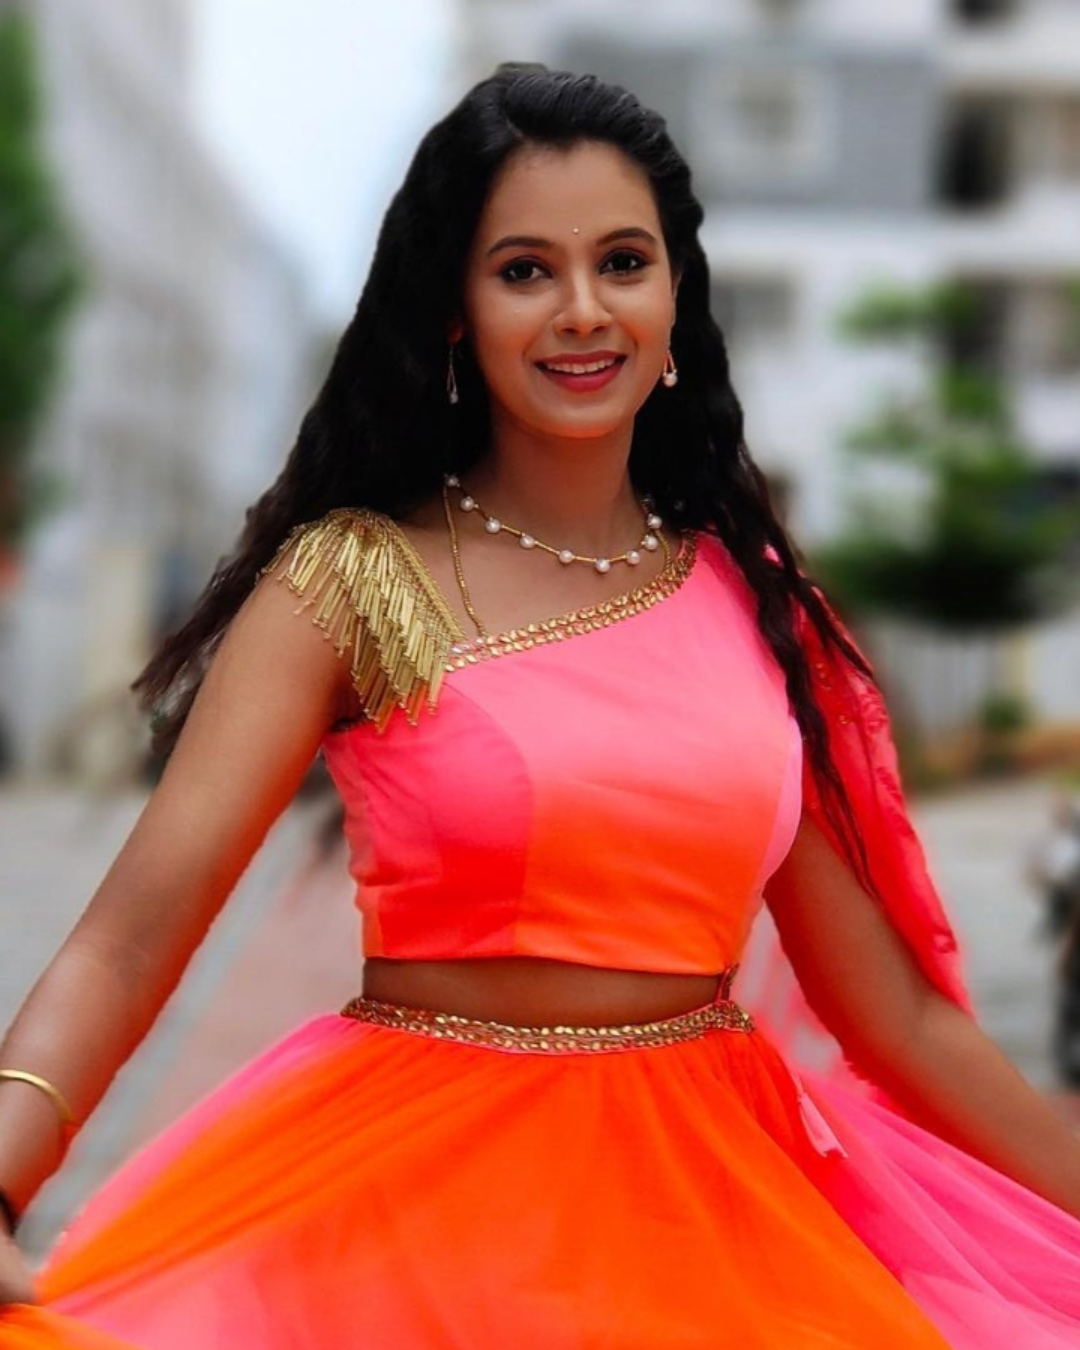 பகுதி - 3: சன் டிவி நடிகைகளின் உண்மையான பெயர், சம்பளம் குறித்த முழு விபரம்.. | Sun TV Tamil Serial Actress Name List